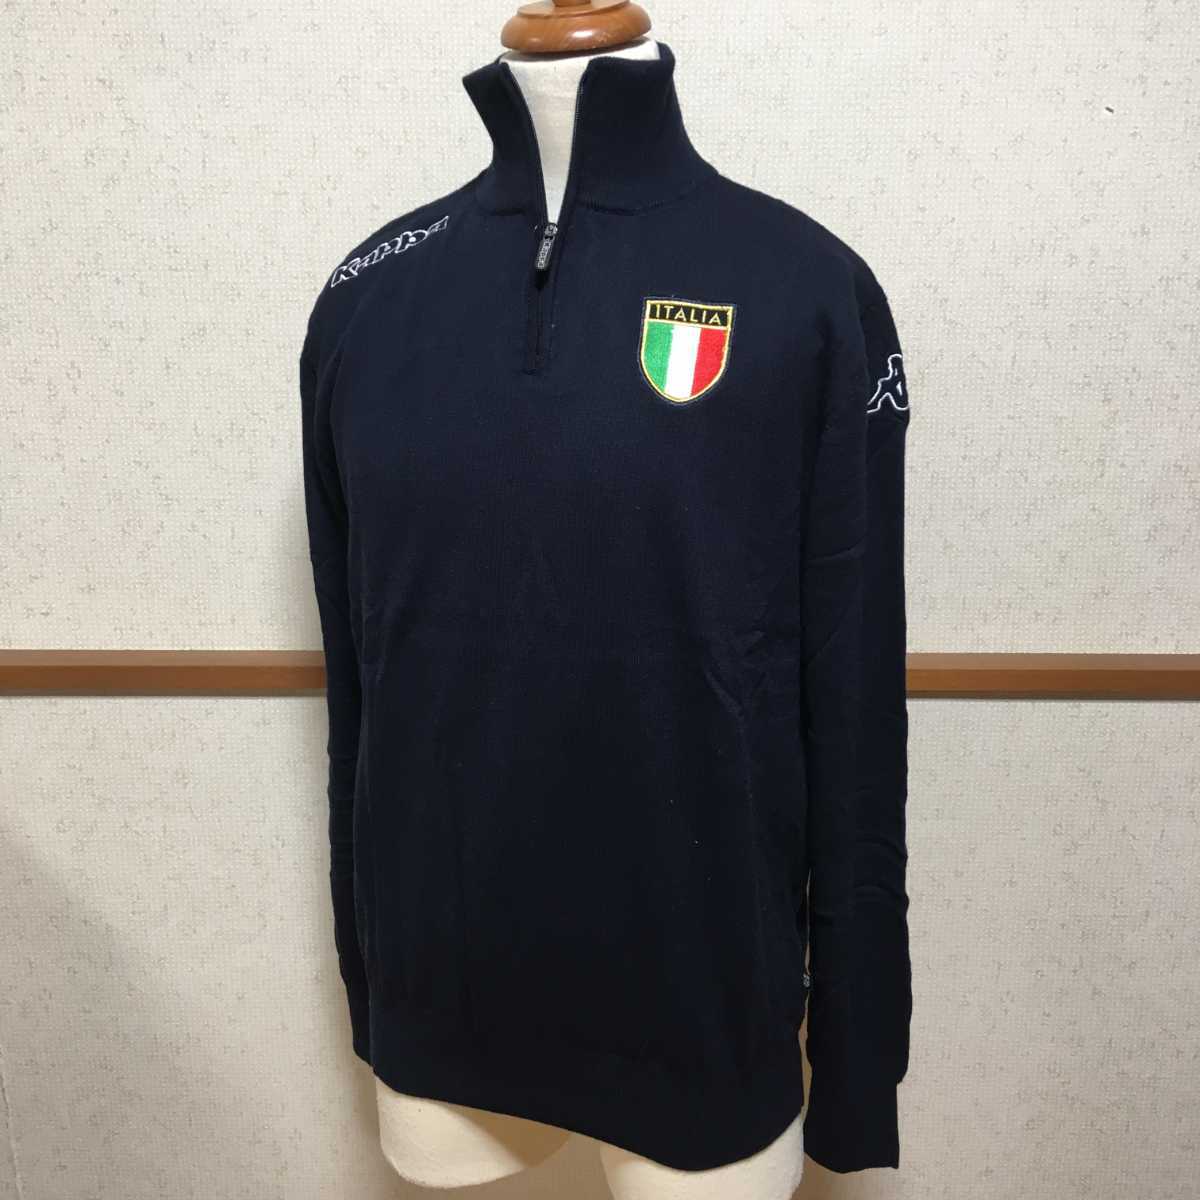 【値下げ】カッパ Kappa ゴルフ 1/4ジップセーター FIG イタリア代表 L 14300円→8800円